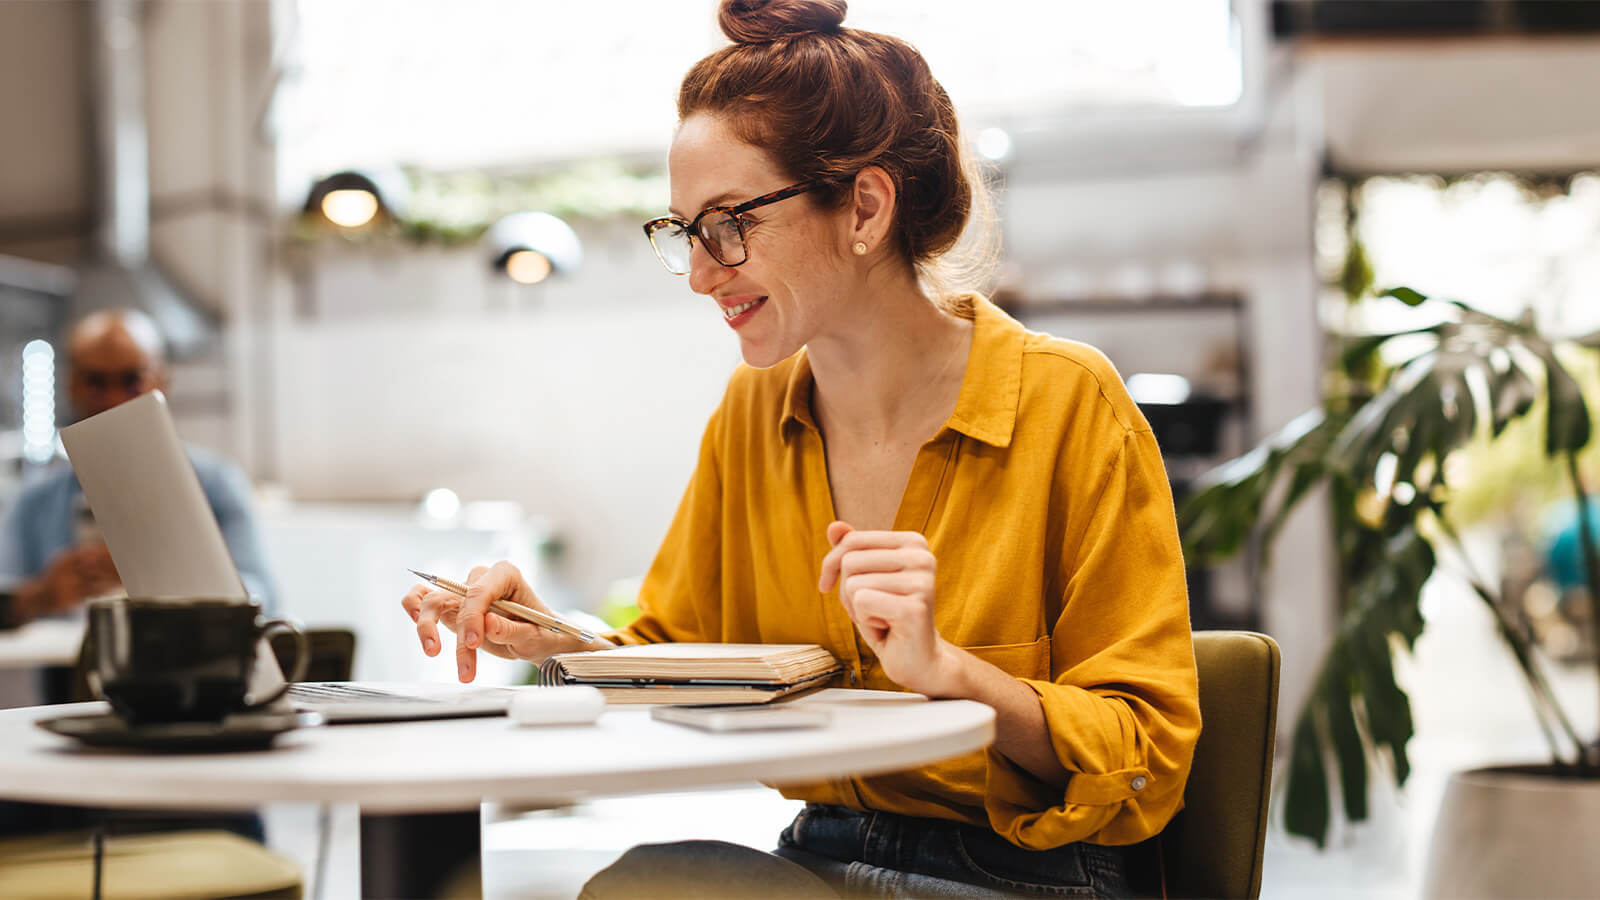 Uma mulher com camisa amarela se senta de frente para uma mesa, onde está apoiado um notebook e ela parece estudar, em relação à importância da pós-graduação no mercado de trabalho.